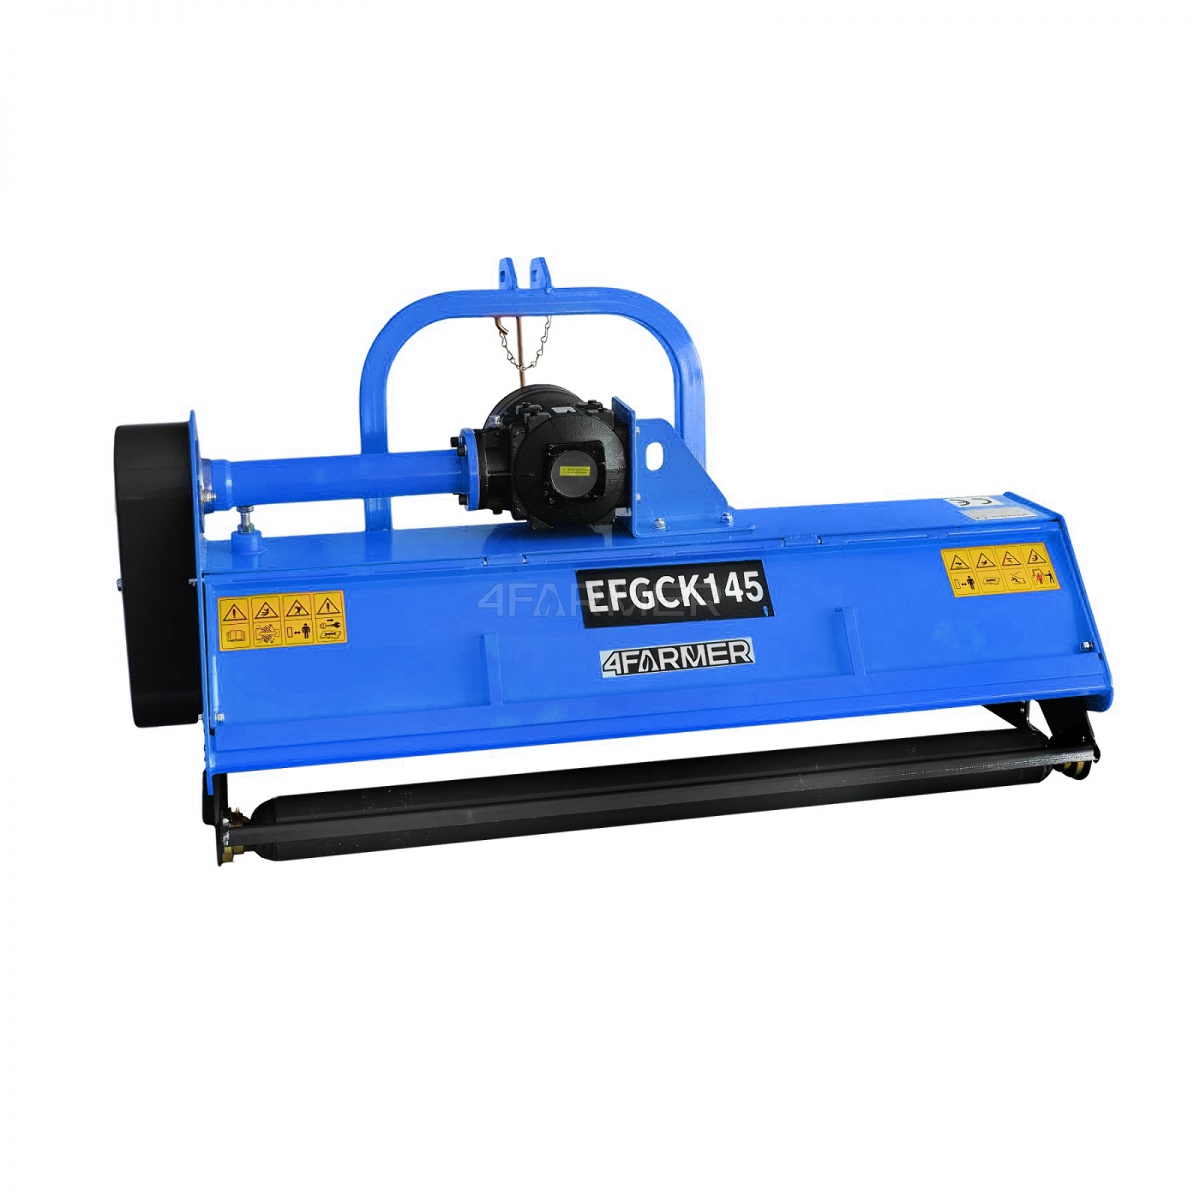 efgc heavy - Flail mower EFGC-K 155, opening 4FARMER hatch - blue